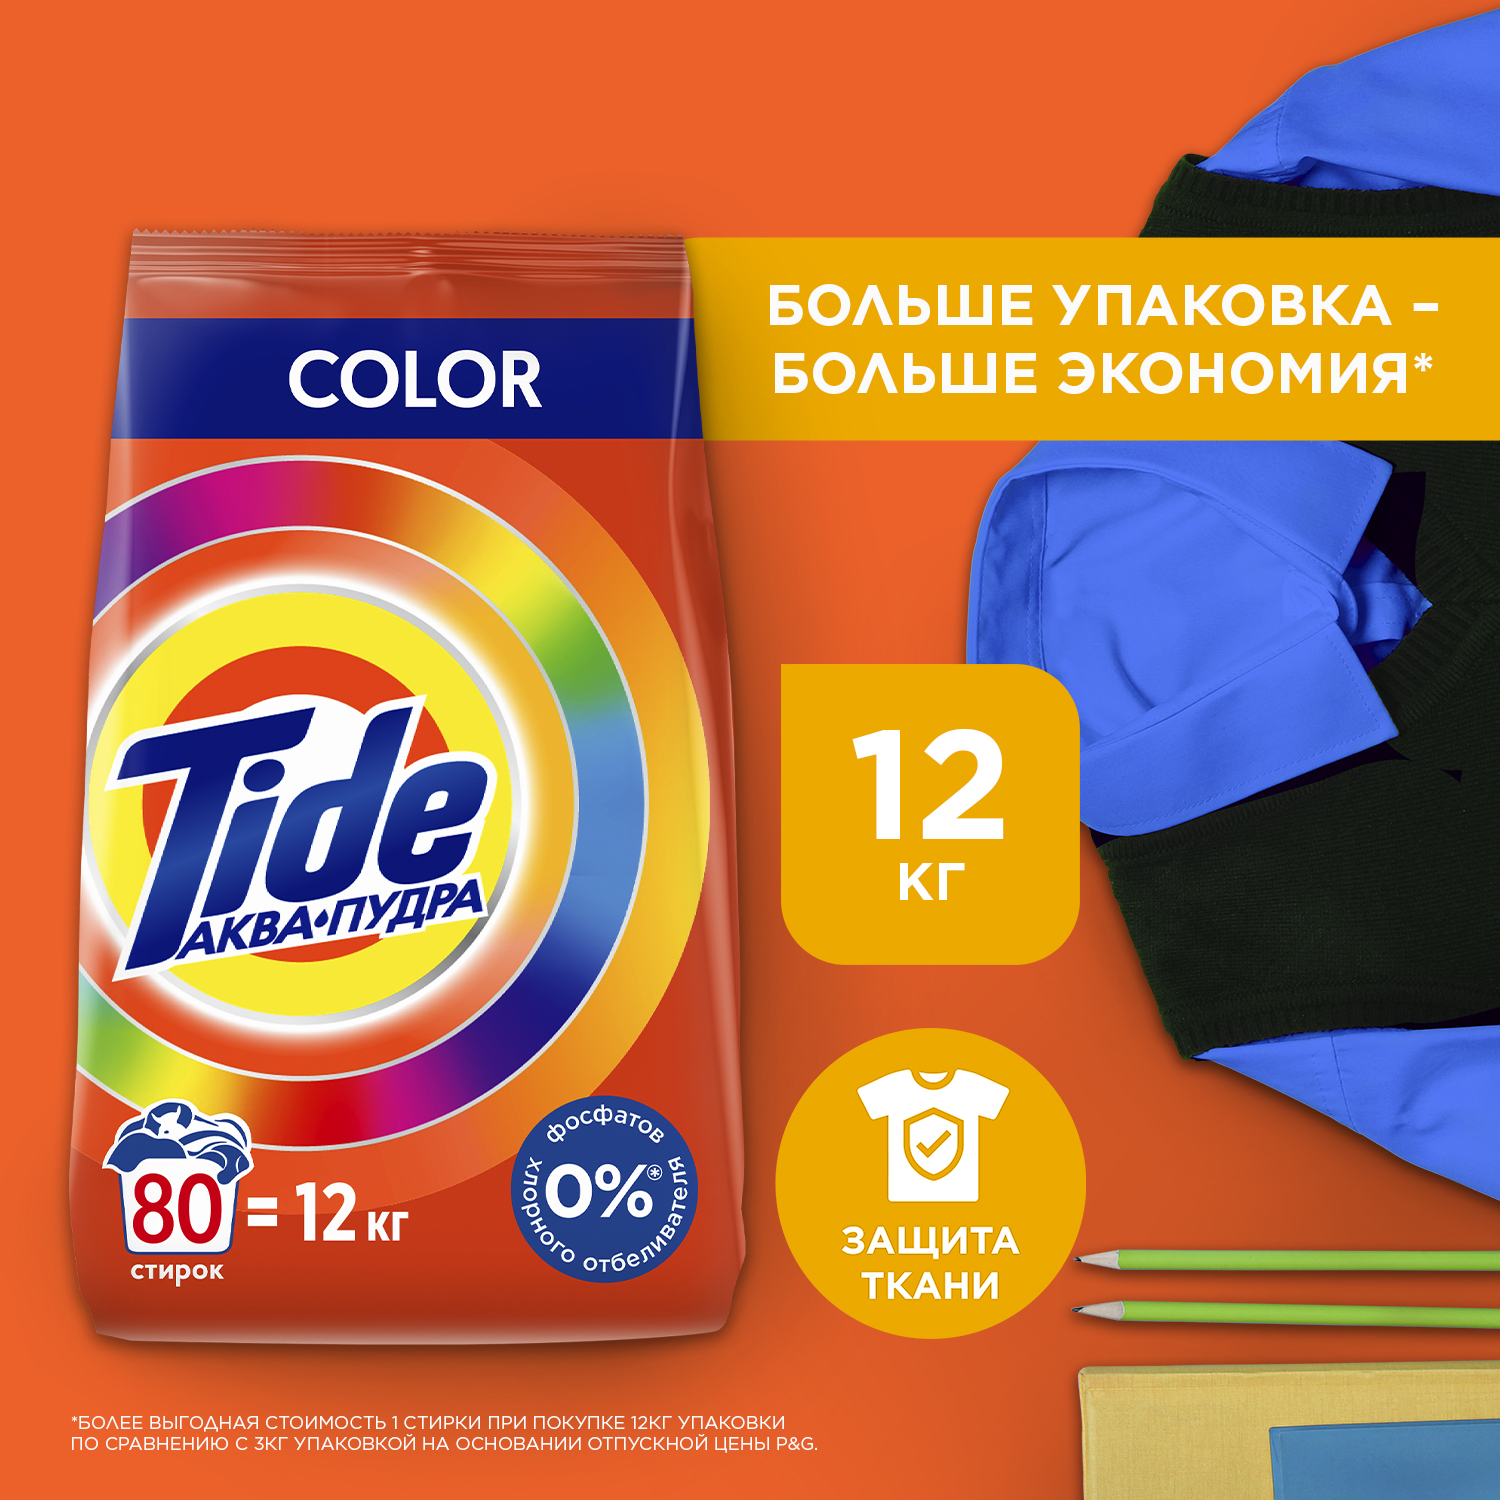 Порошок для стирки Tide сolor 12 кг - купить в Разумный выбор Москва (со склада СберМегаМаркет), цена на Мегамаркет